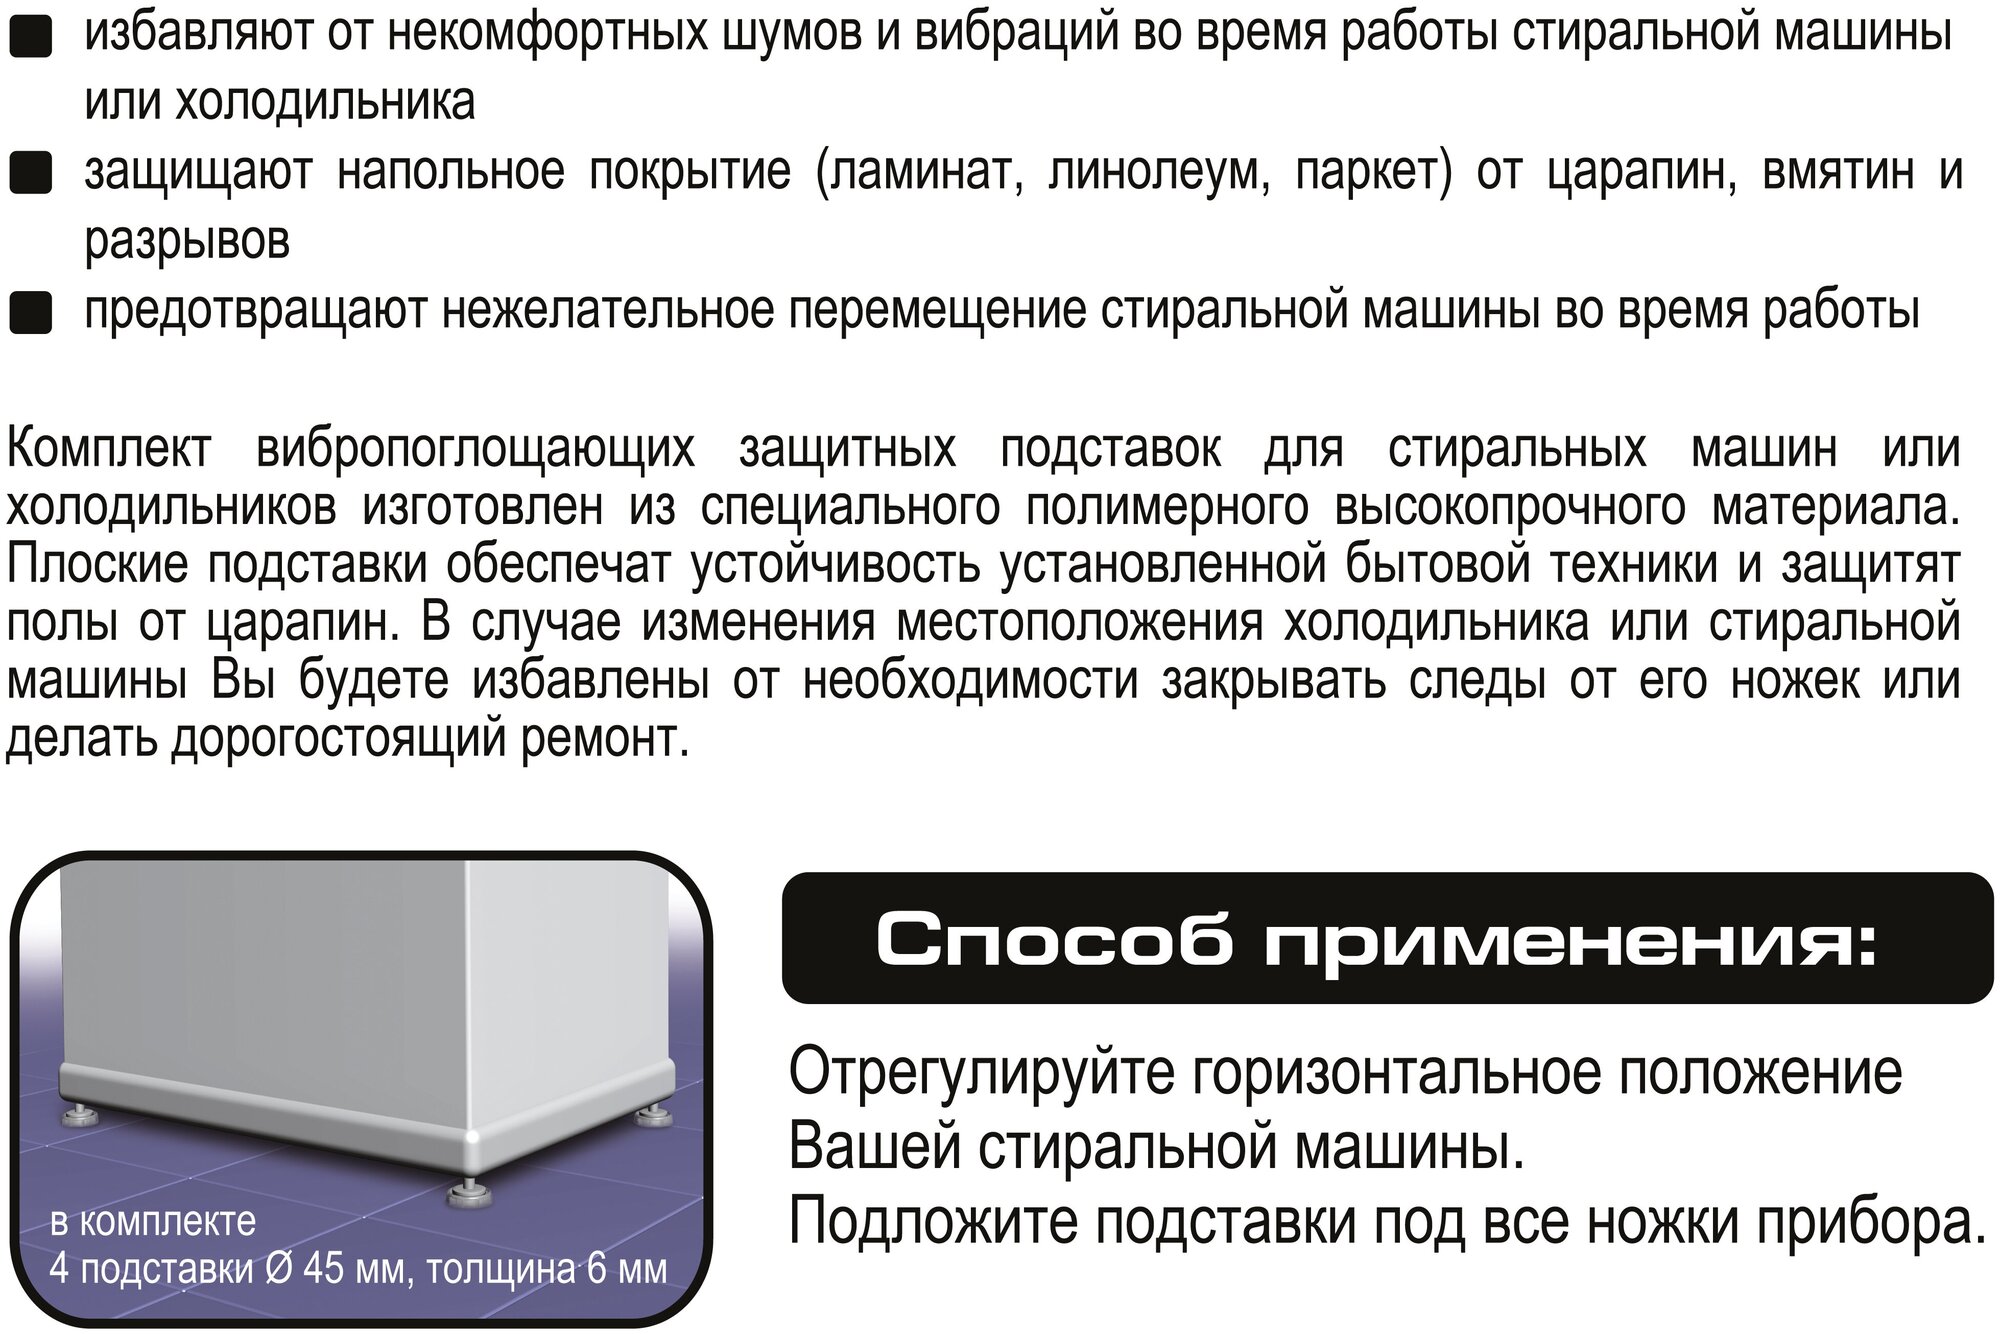 Topperr Антивибрационные подставки для стир машин и холодильников, тонкие, компл. 4 шт, 3225